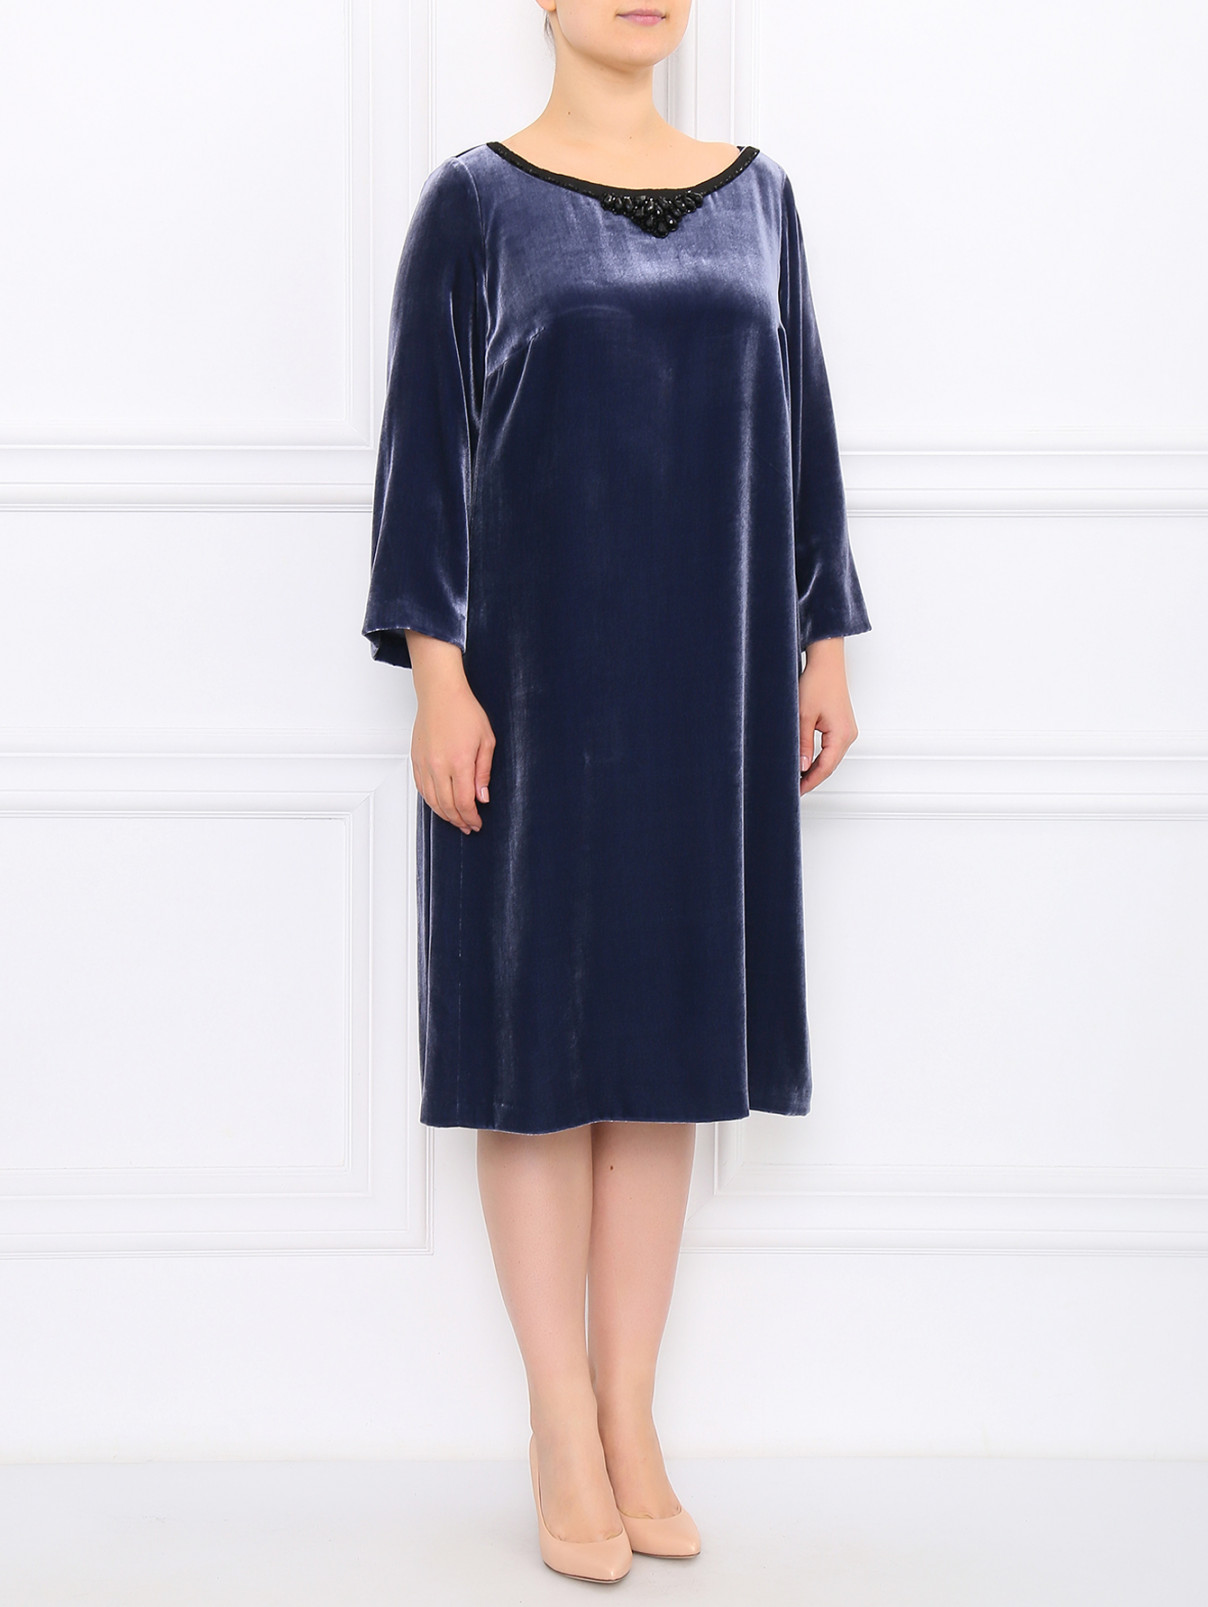 Платье бархатное декорированное камнями Marina Rinaldi  –  Модель Общий вид  – Цвет:  Синий